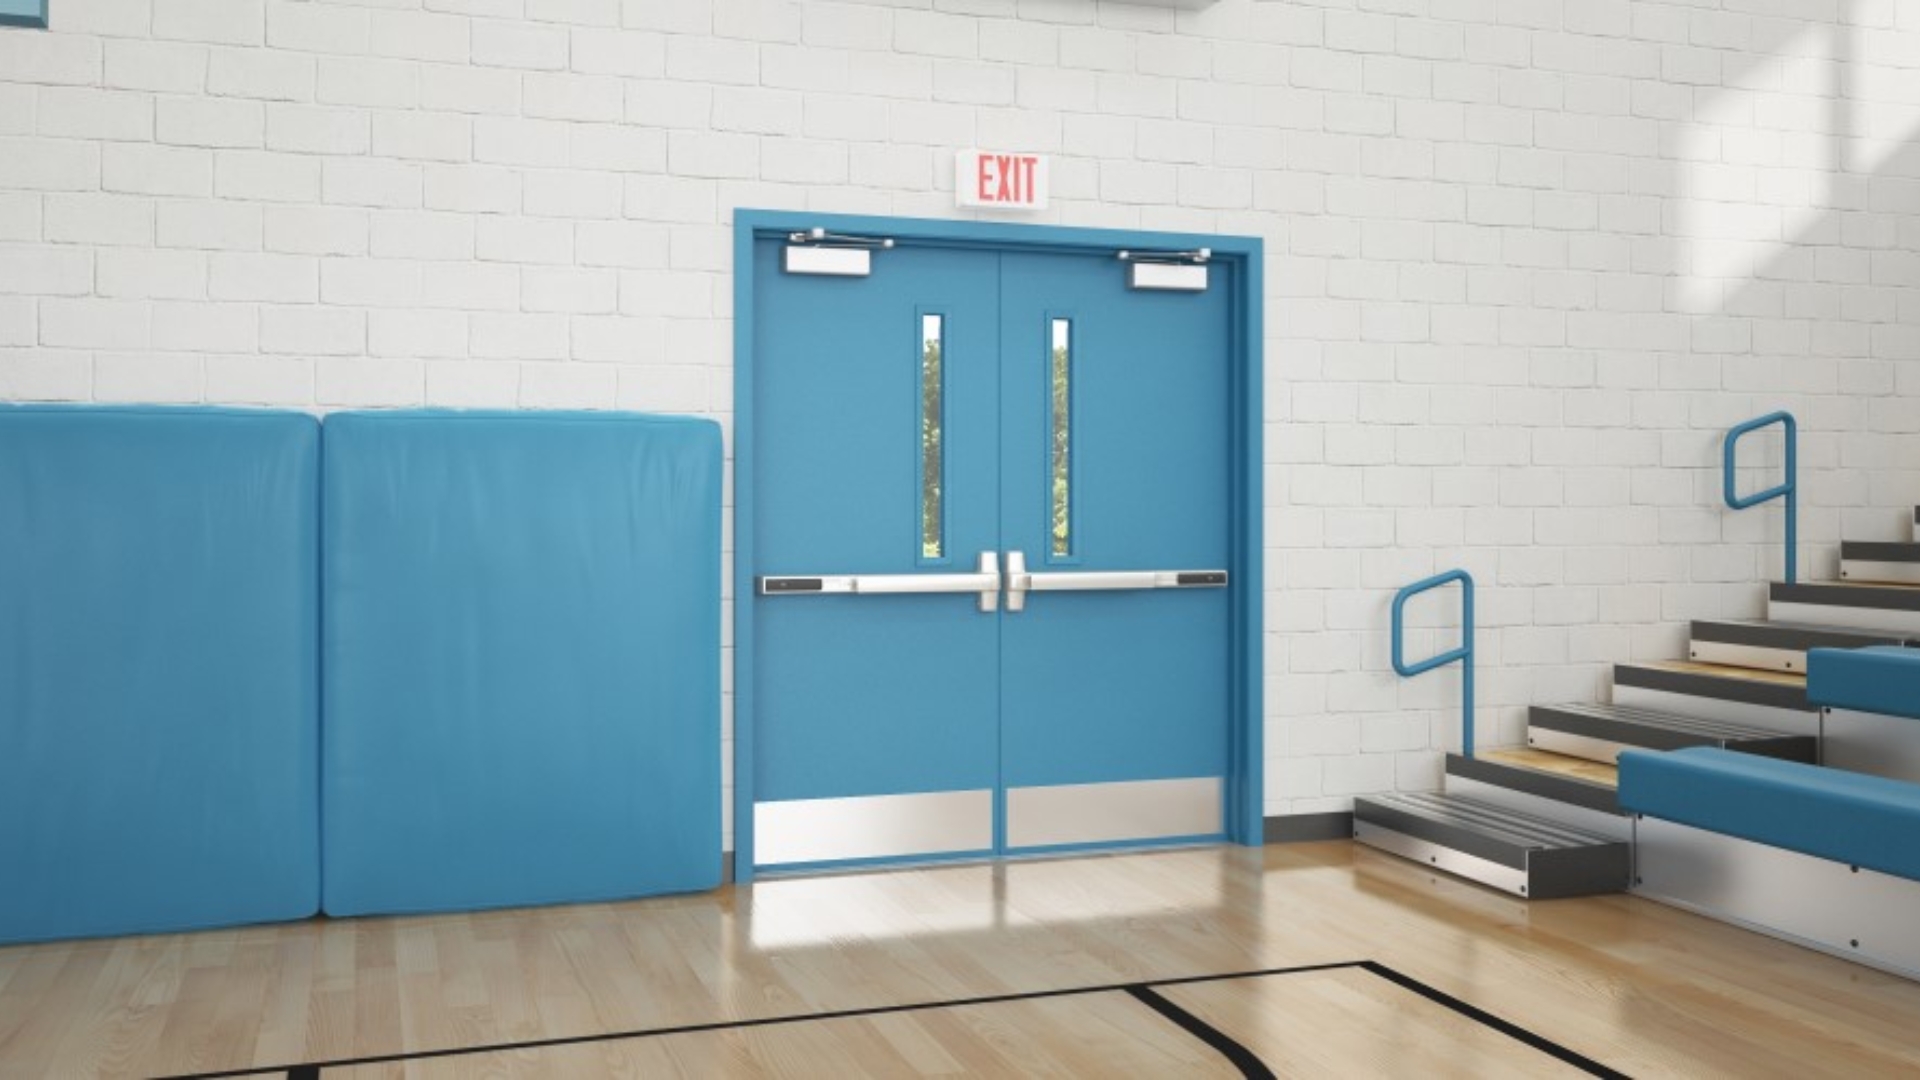 Panic hardware installed in school gym exit doors